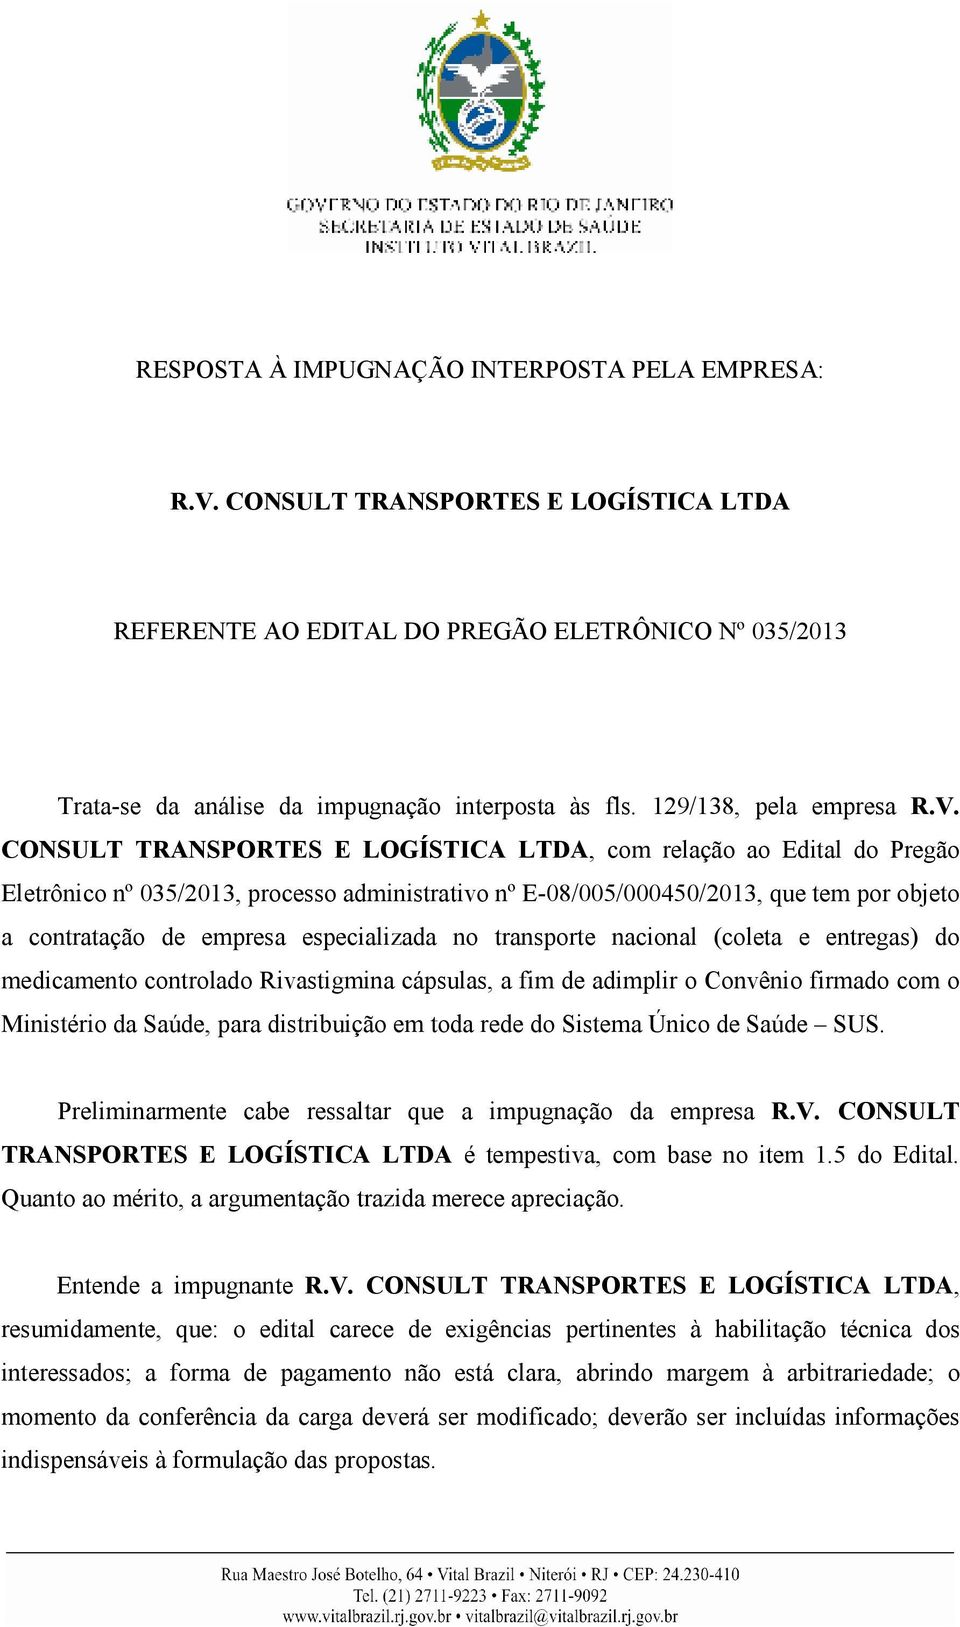 CONSULT TRANSPORTES E LOGÍSTICA LTDA, com relação ao Edital do Pregão Eletrônico nº 035/2013, processo administrativo nº E-08/005/000450/2013, que tem por objeto a contratação de empresa